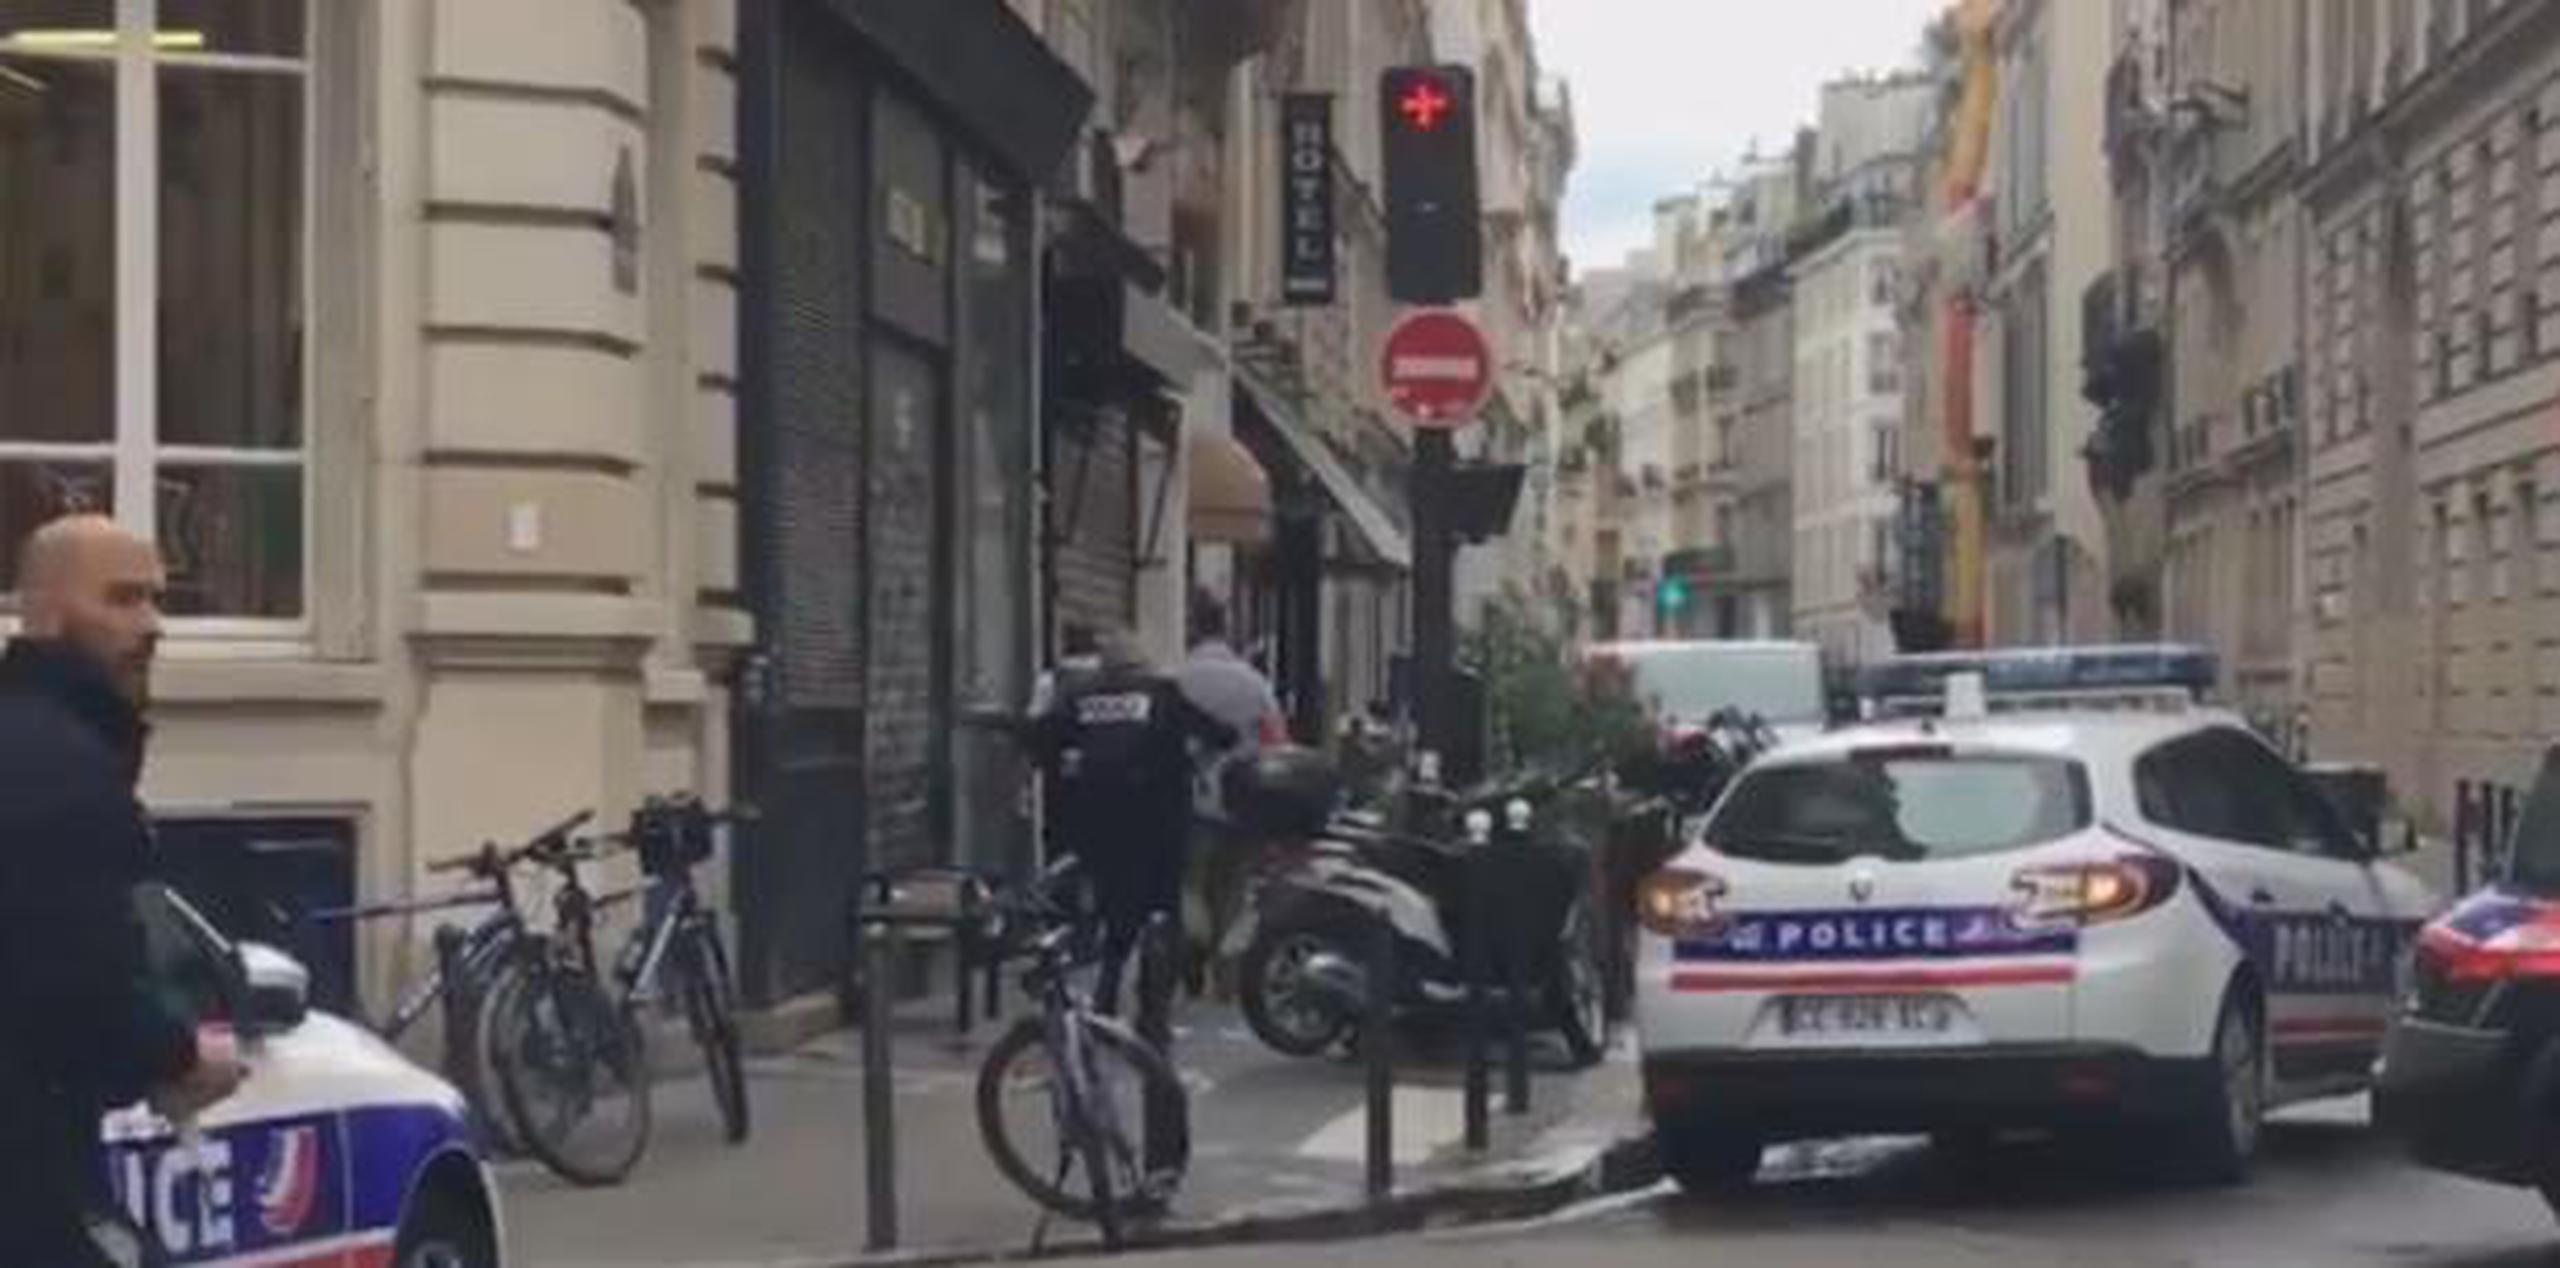 Fotos y vídeos publicados en las redes sociales muestras a las autoridades en las afueras de un edificio de la calle Paris's Petites Ecuries. (Captura)